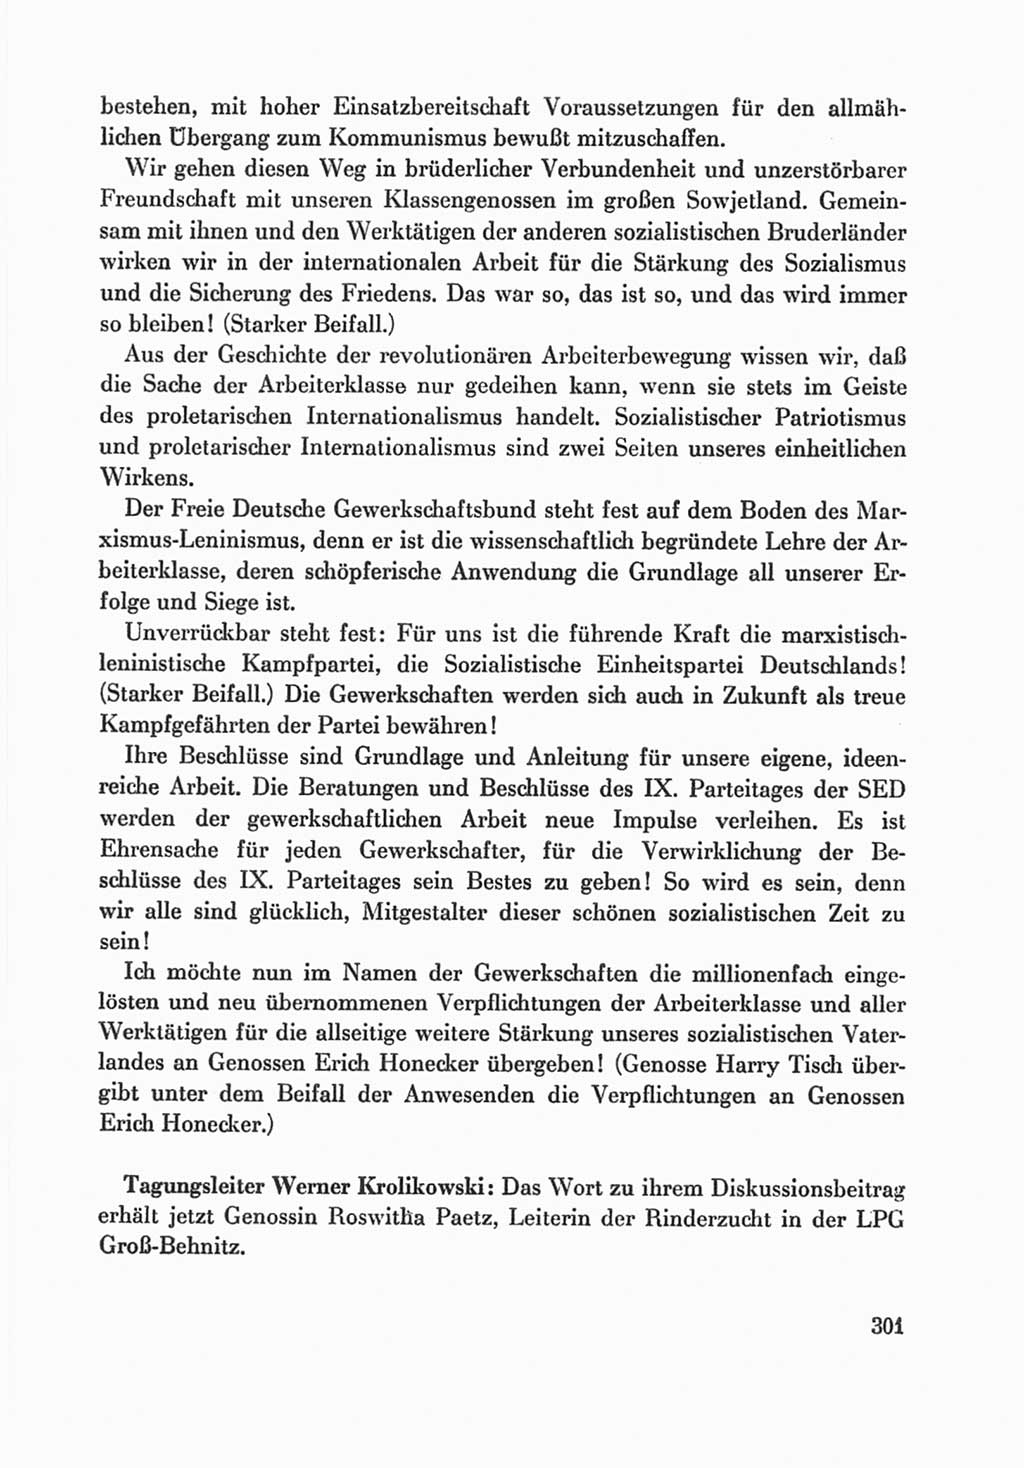 Protokoll der Verhandlungen des Ⅸ. Parteitages der Sozialistischen Einheitspartei Deutschlands (SED) [Deutsche Demokratische Republik (DDR)] 1976, Band 1, Seite 301 (Prot. Verh. Ⅸ. PT SED DDR 1976, Bd. 1, S. 301)